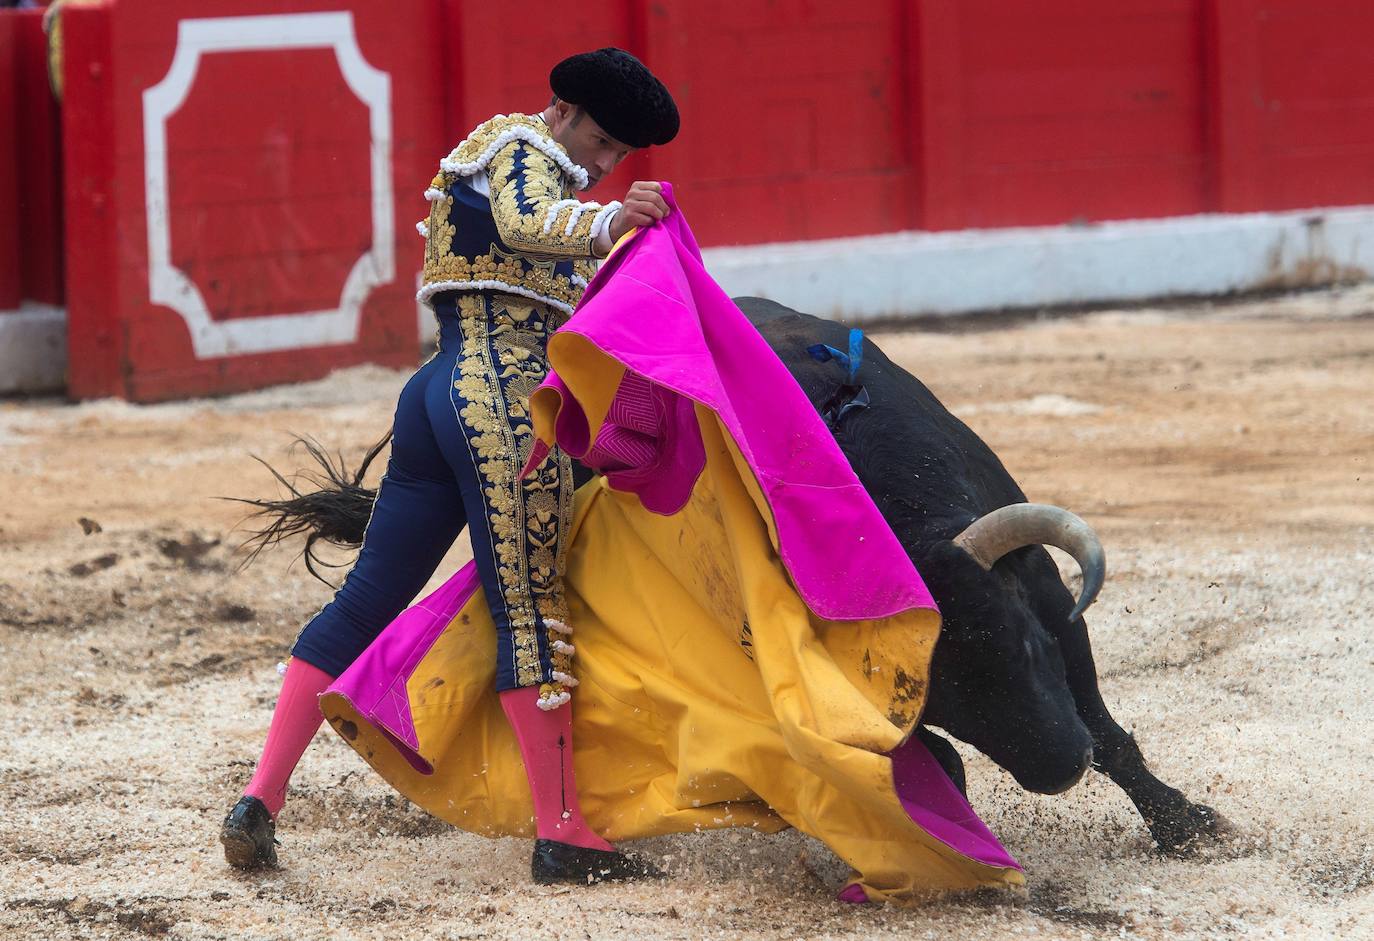 El diestro Paco Ureña durante el festejo taurino celebrado en el último día de la Feria de Santiago, en la que compartió cartel con Morante de la Puebla y Antonio Ferrera, con toros de la ganadería Jandilla.